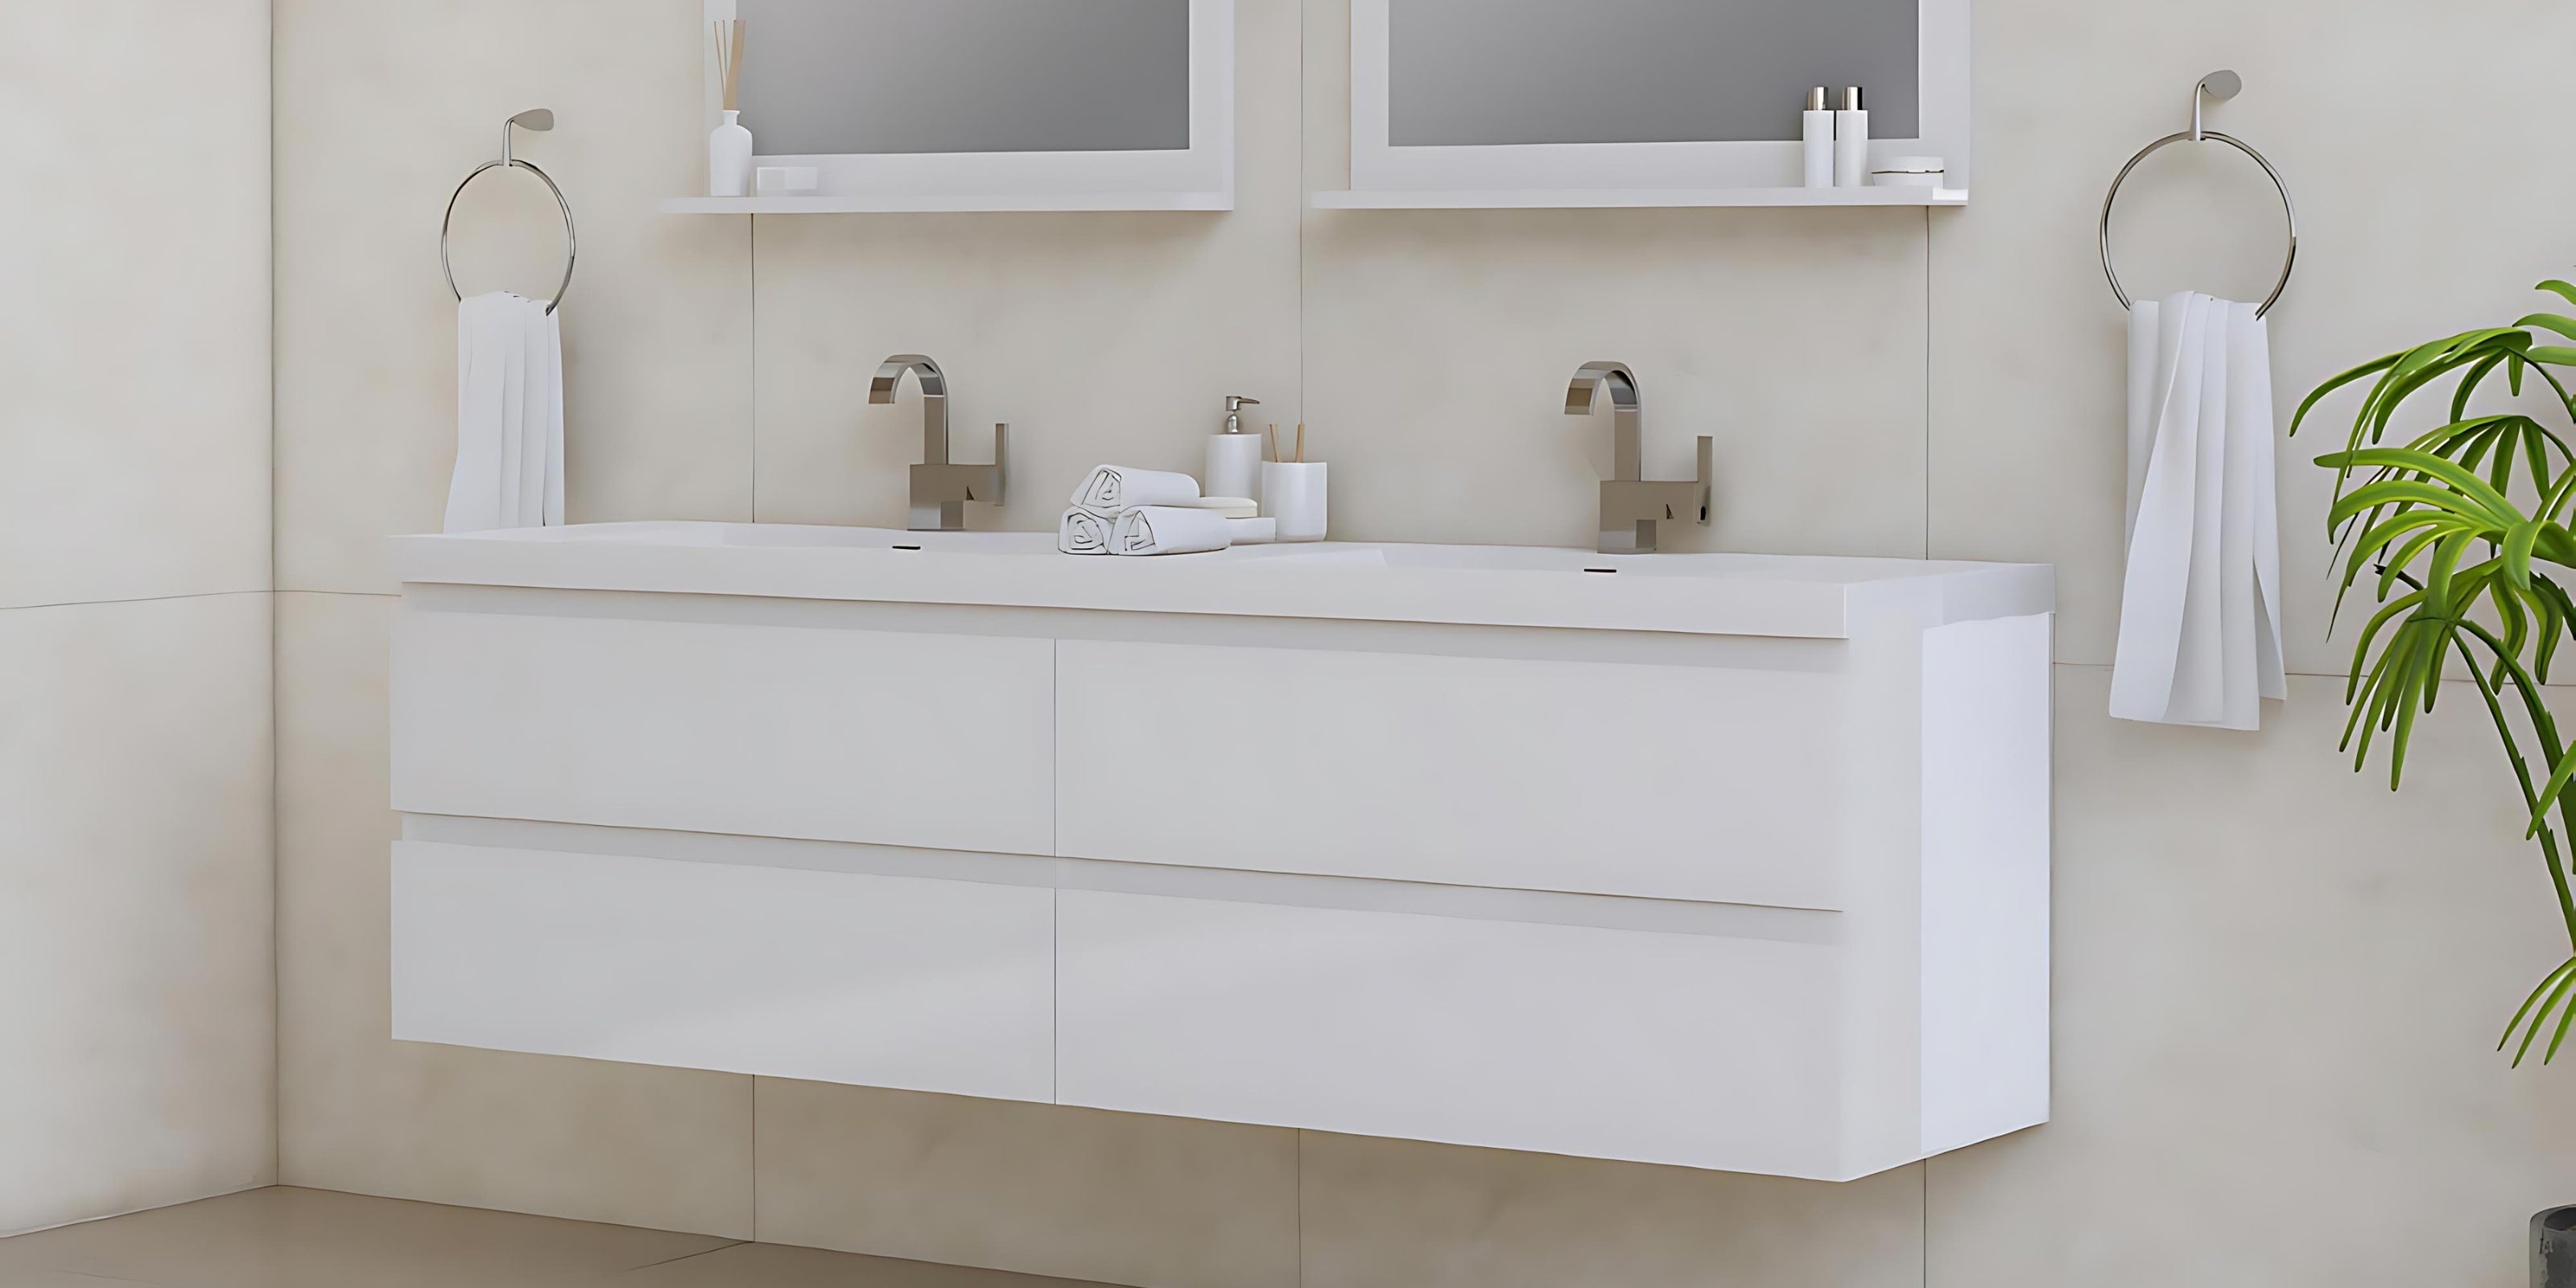 Floating bathroom vanity with a modern sleek design